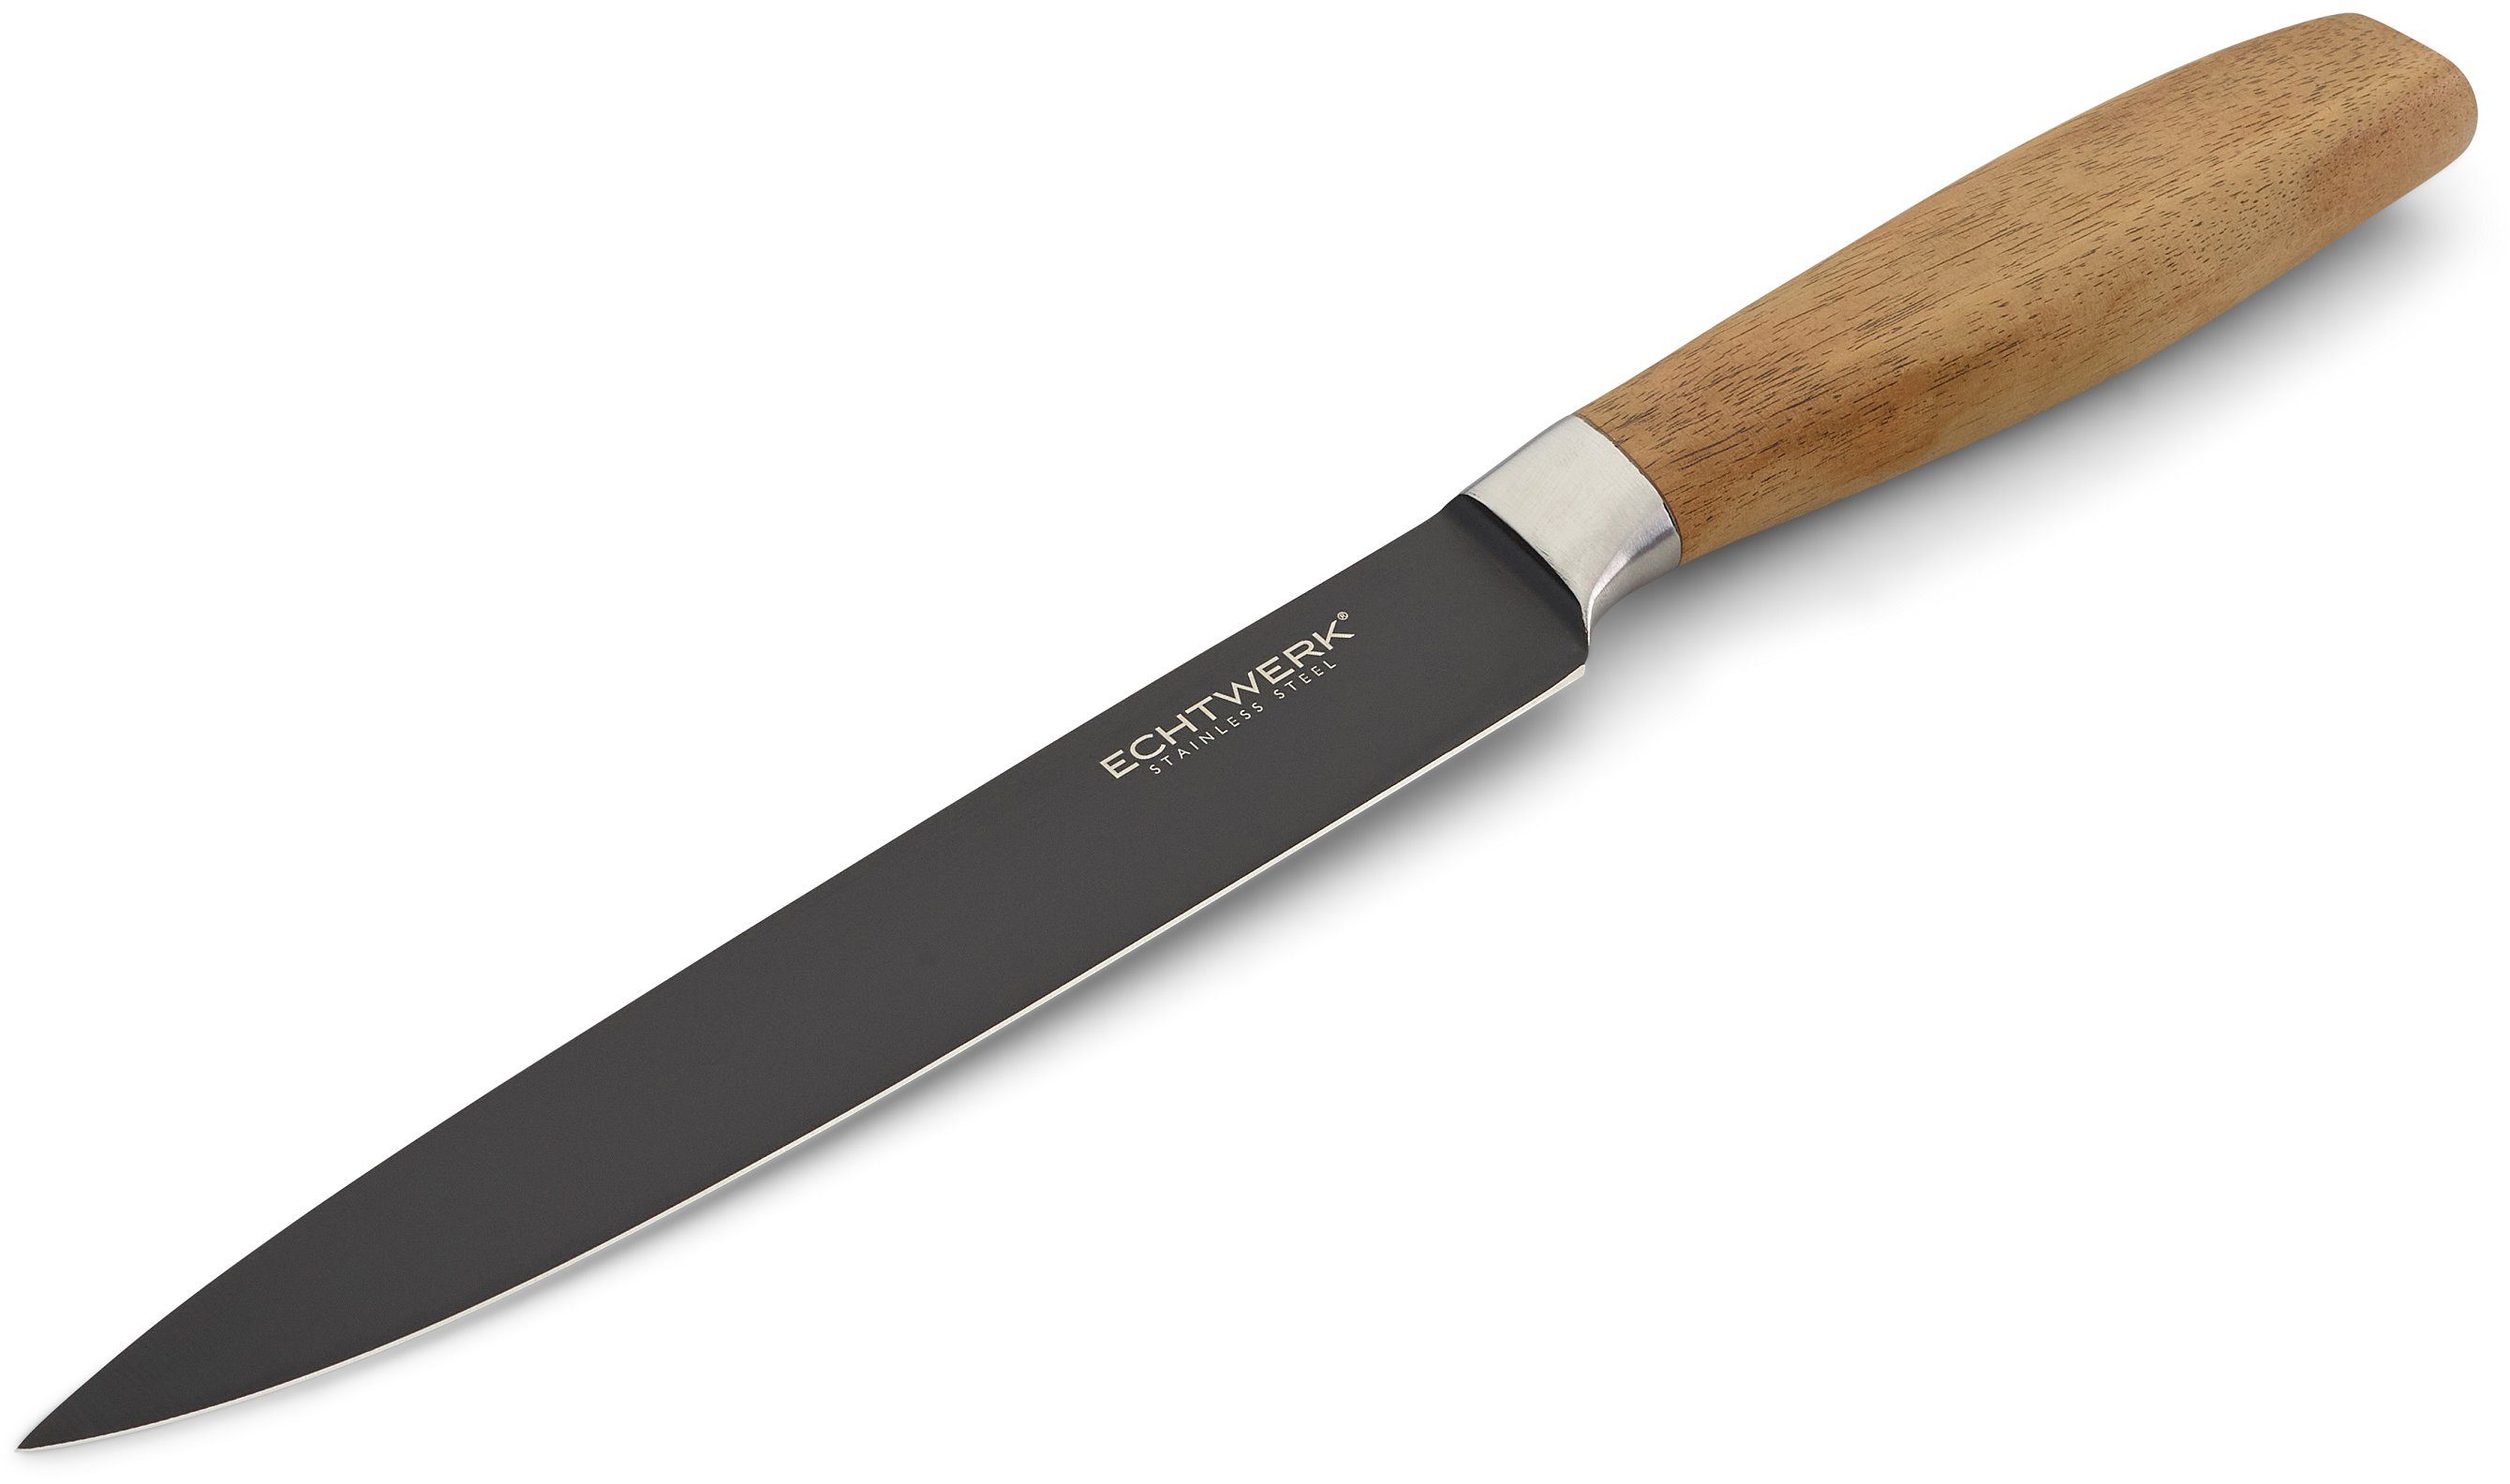 ECHTWERK Fleischmesser Classic, hochwertigem aus Akazienholzgriff, cm Black-Edition, 20 Stahl